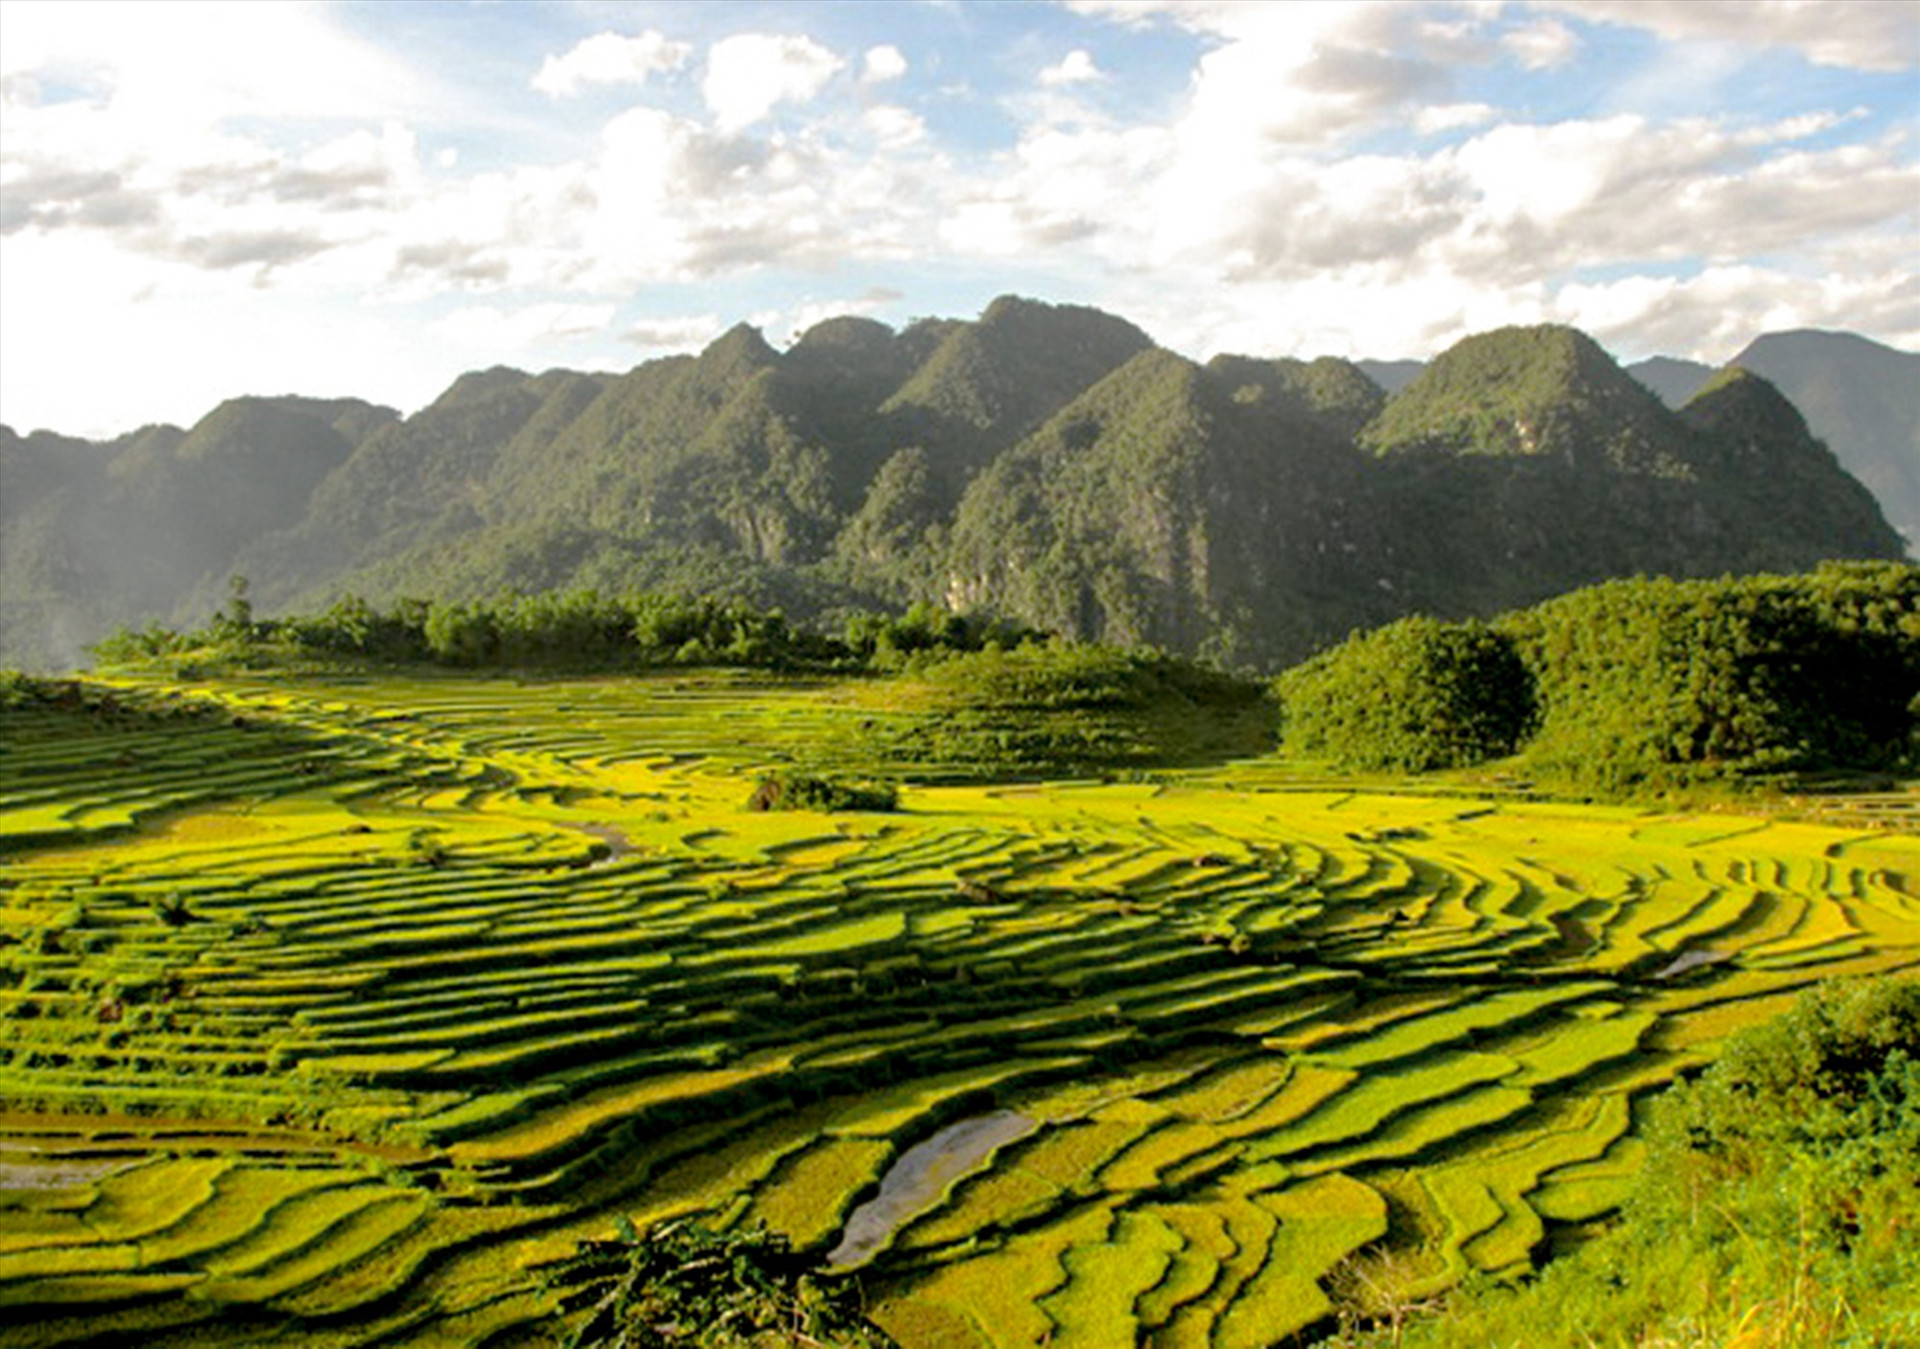 Khu bảo tồn thiên nhiên Pù Luông có ngọn núi cao nhất vùng với độ cao 1.700m.